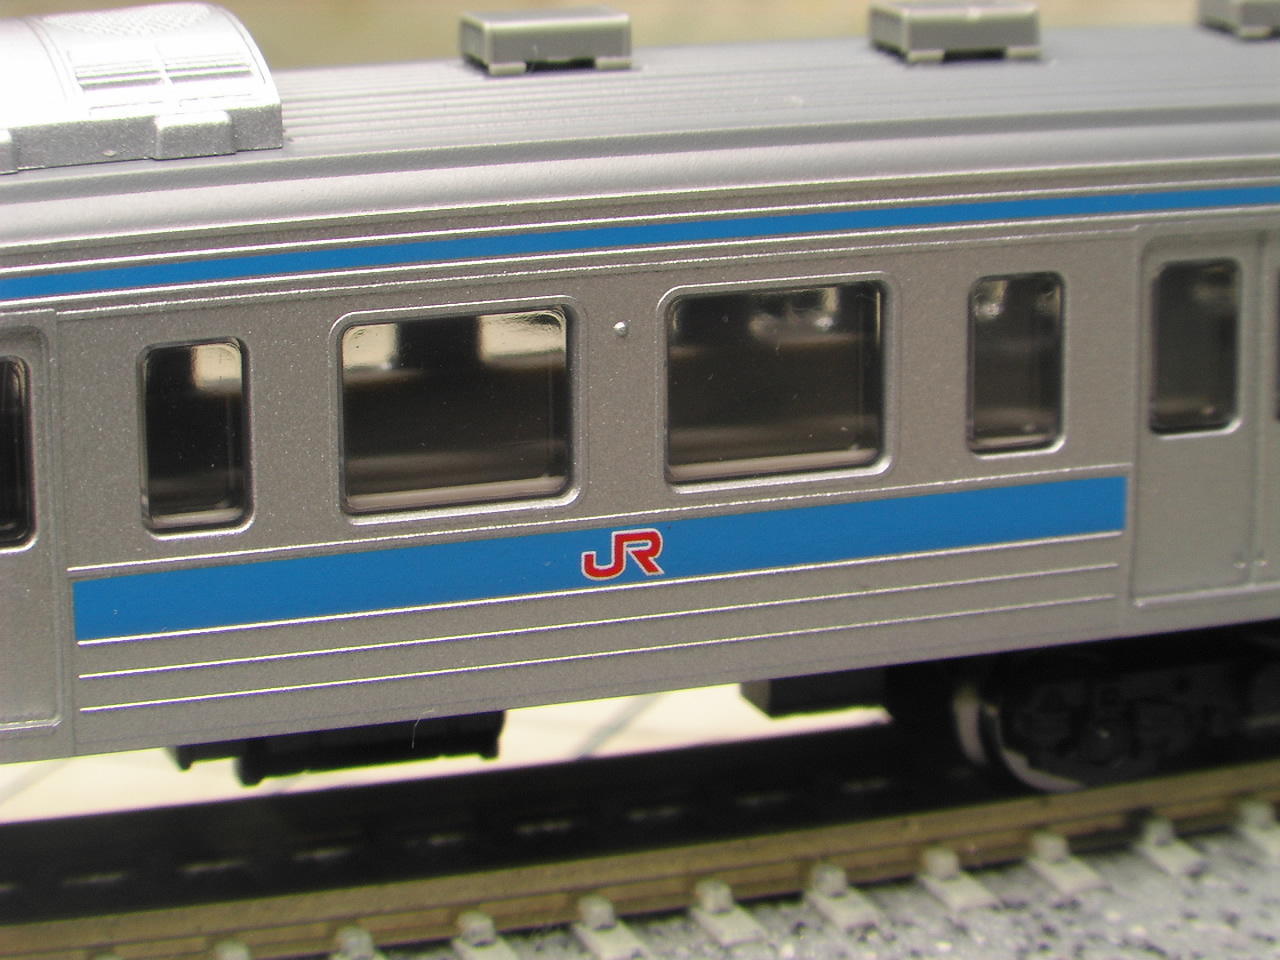 JR415系1500番台近郊電車(九州カラー)92050 | www.hartwellspremium.com